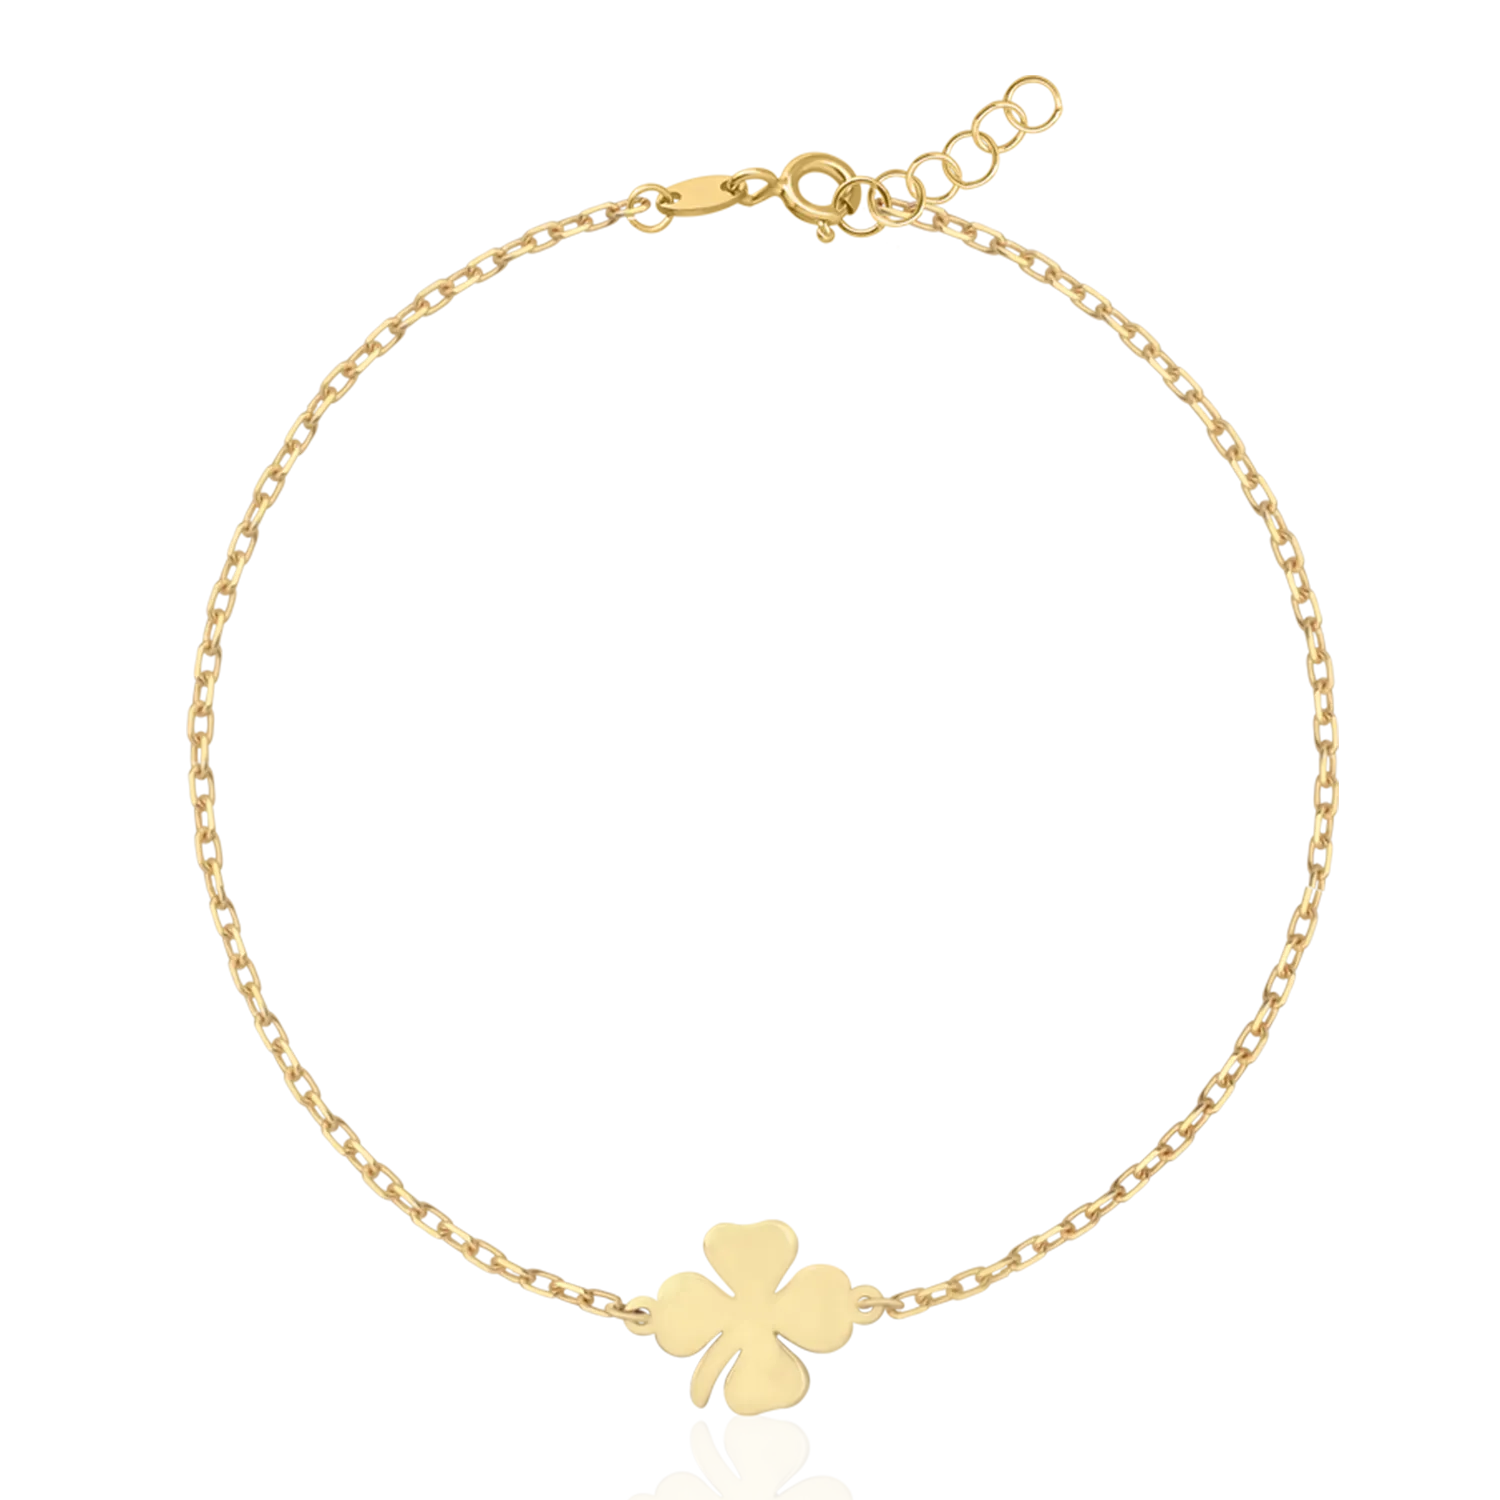 14K yellow gold clover bracelet